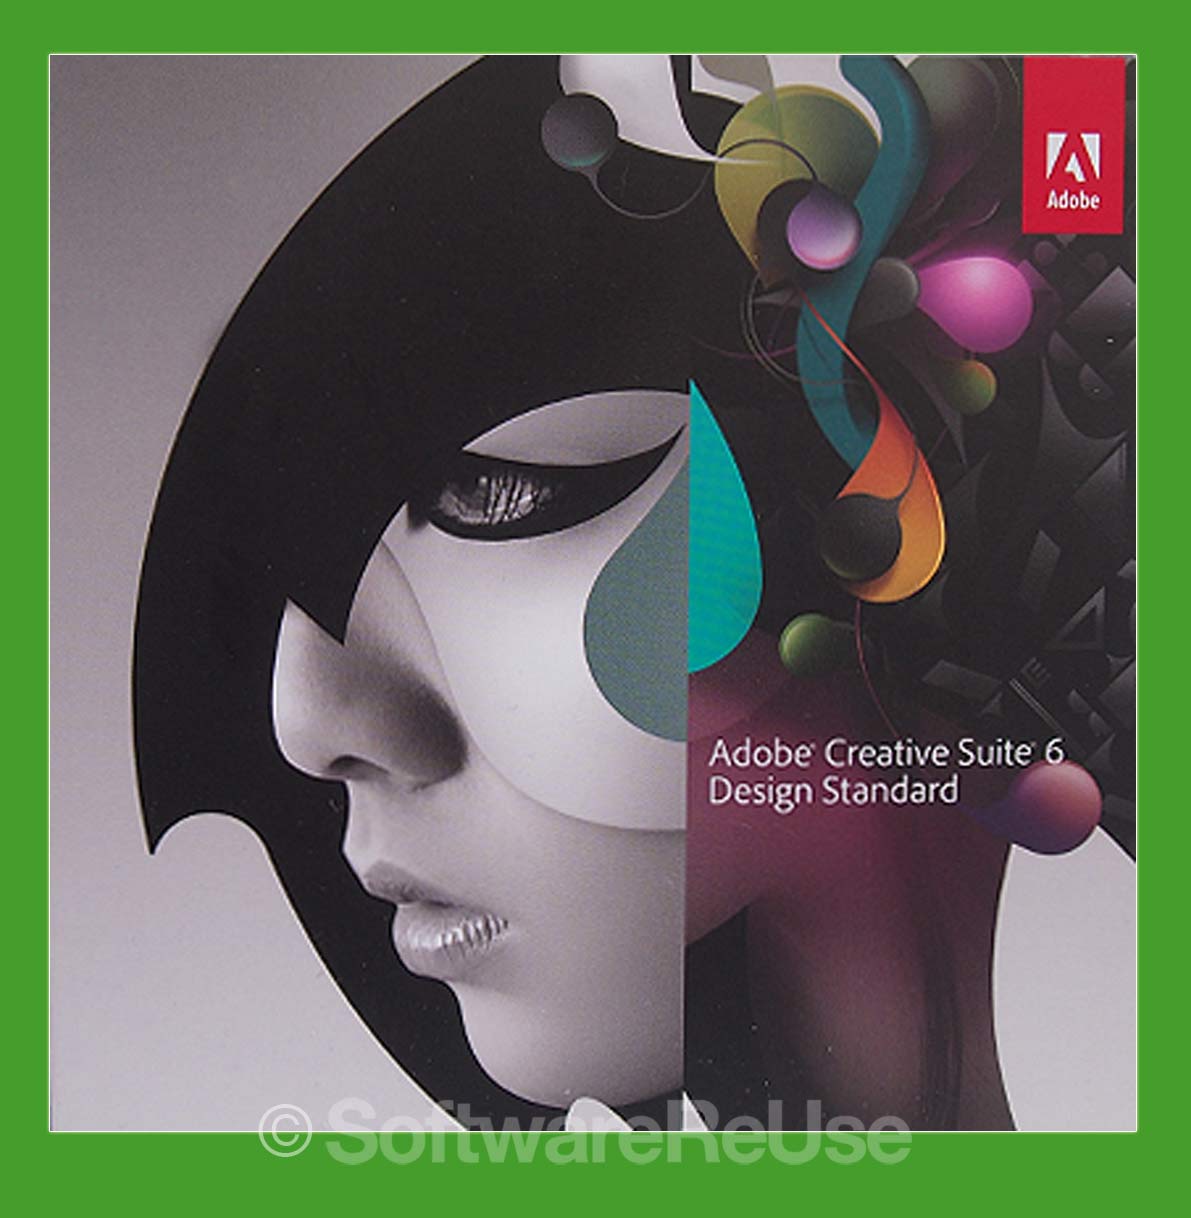 Adobe Creative Suite Design Standard 6 Mac